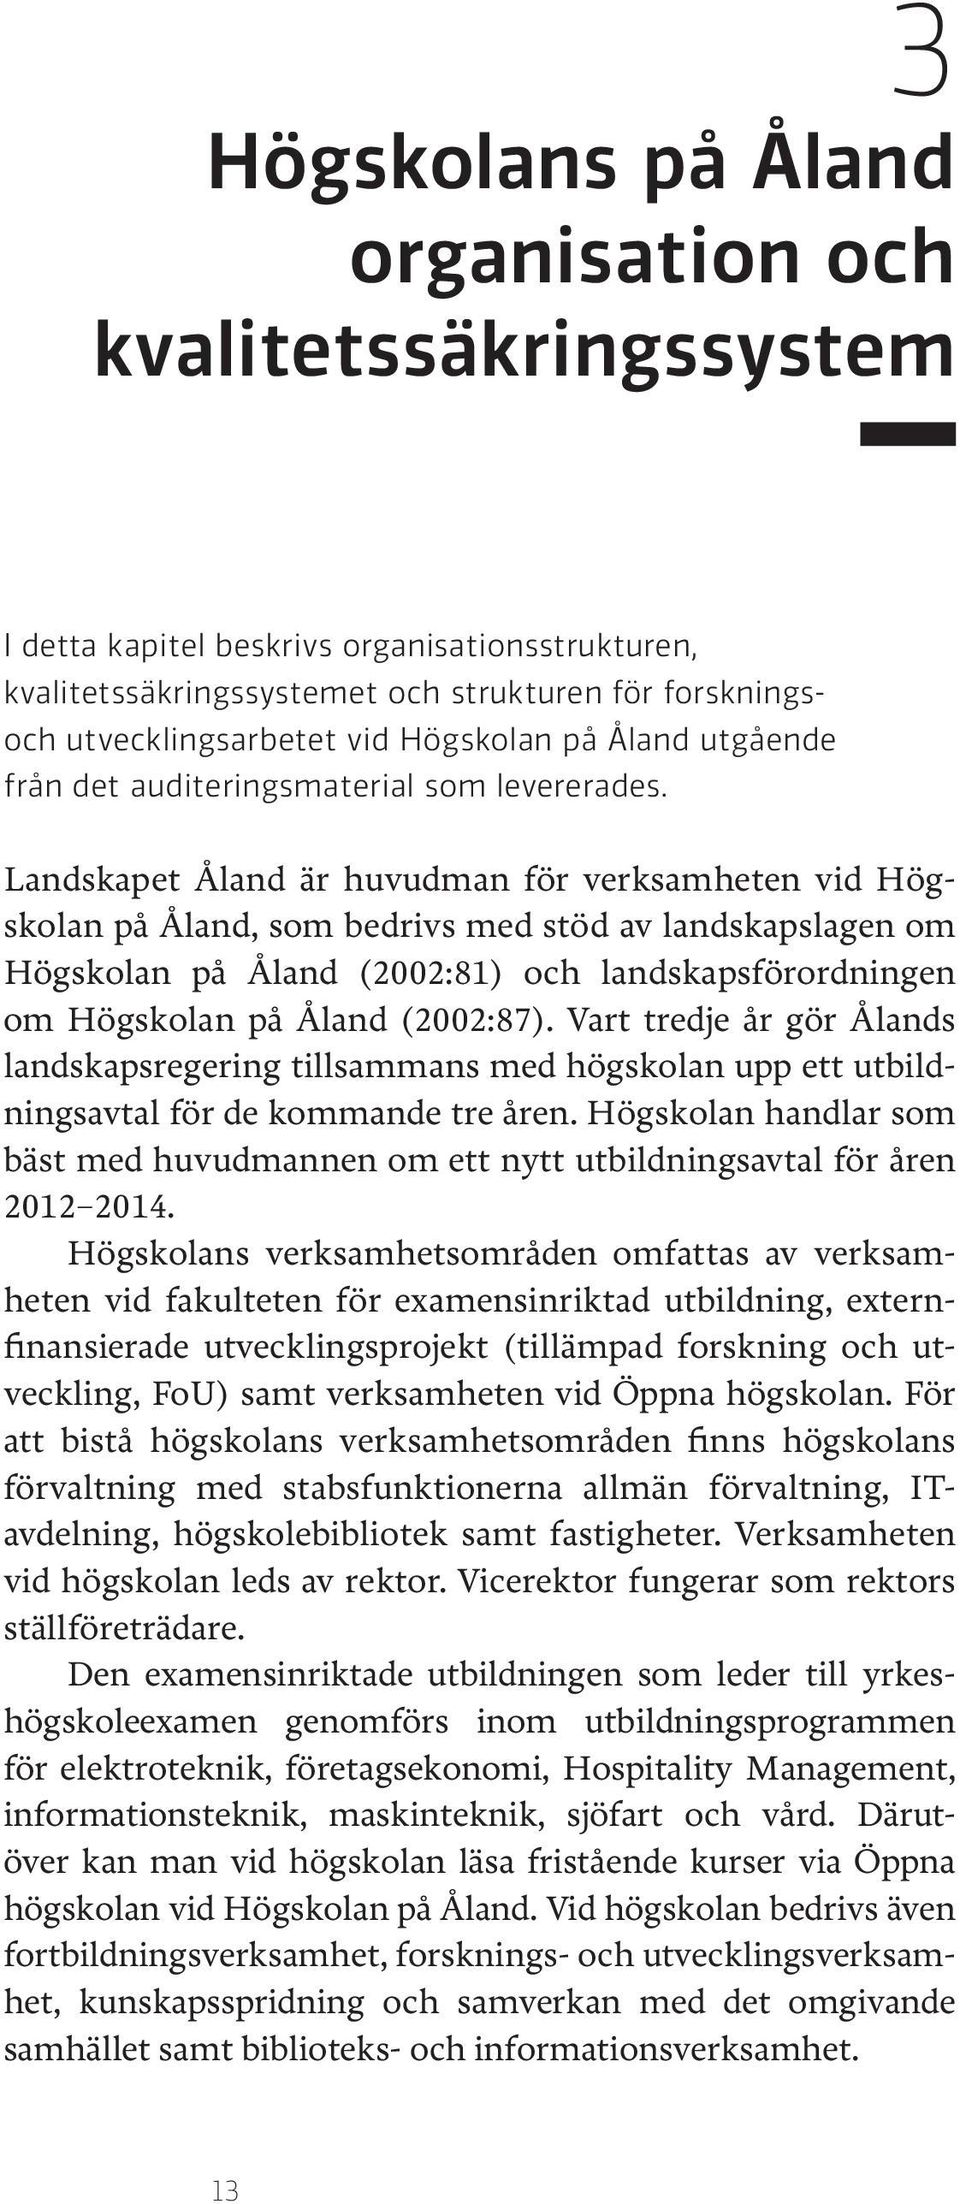 Landskapet Åland är huvudman för verksamheten vid Högskolan på Åland, som bedrivs med stöd av landskapslagen om Högskolan på Åland (2002:81) och landskapsförordningen om Högskolan på Åland (2002:87).